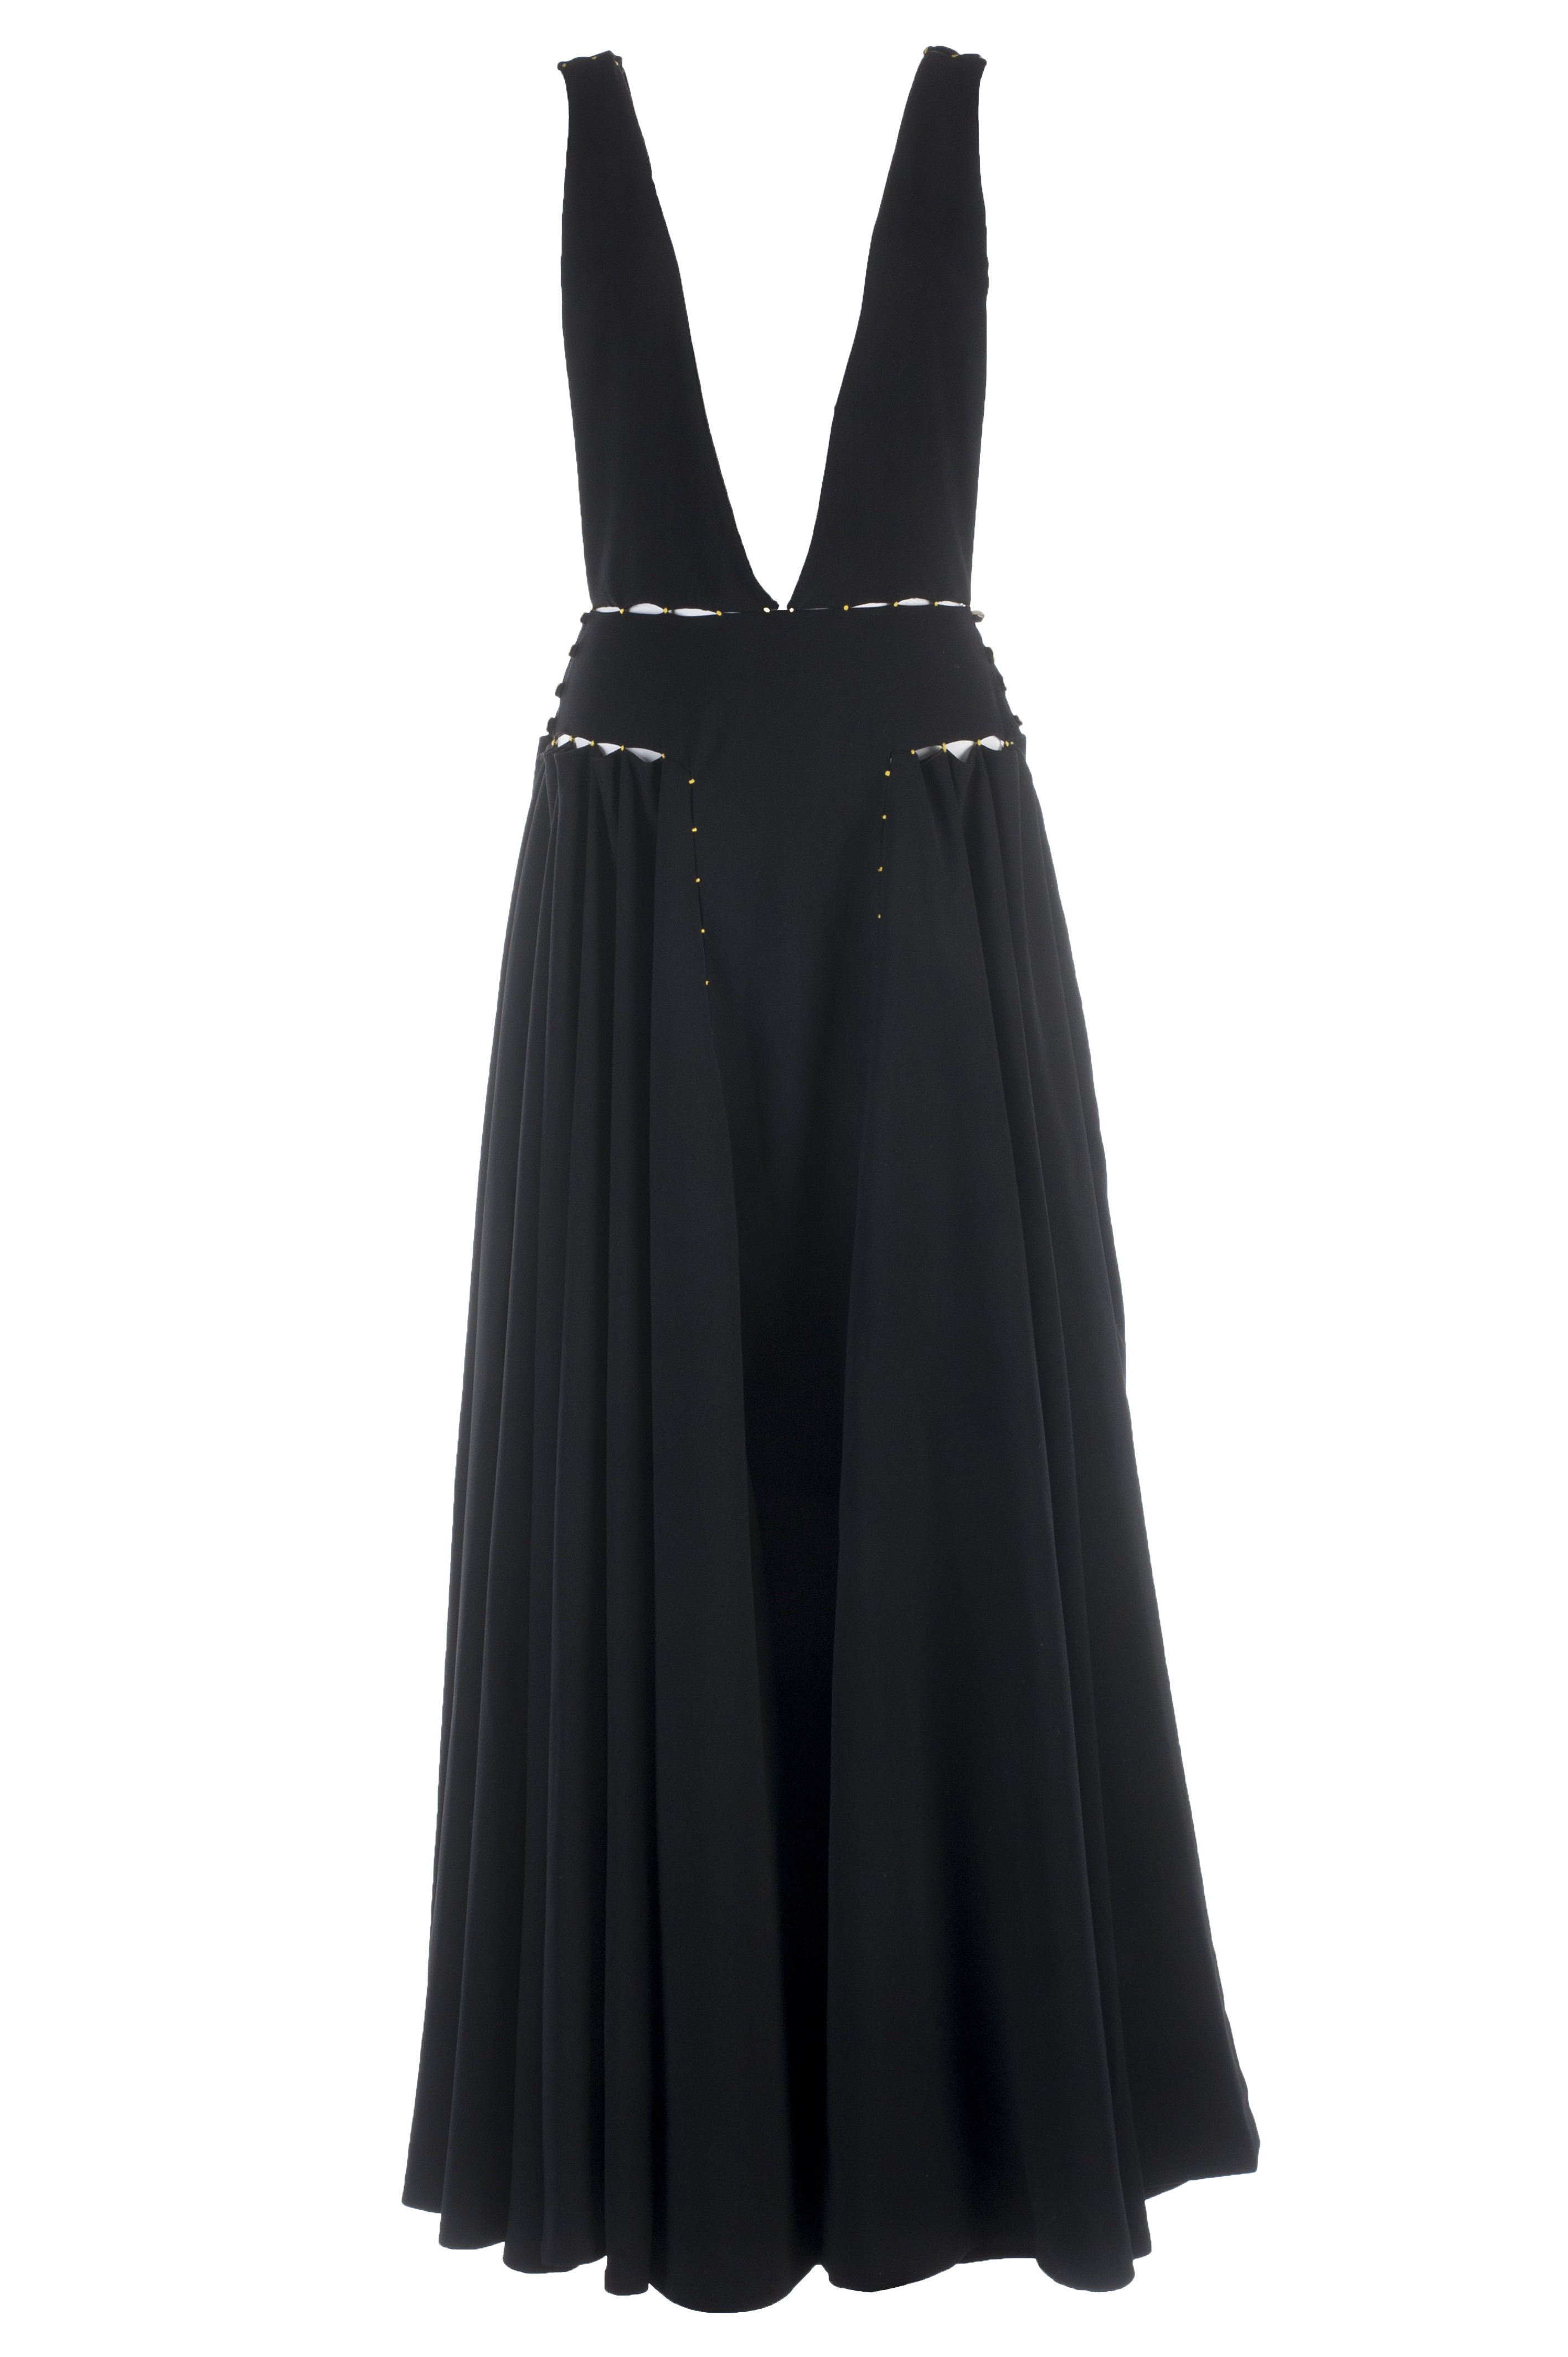 Plunge Long Black Dress A/W 17